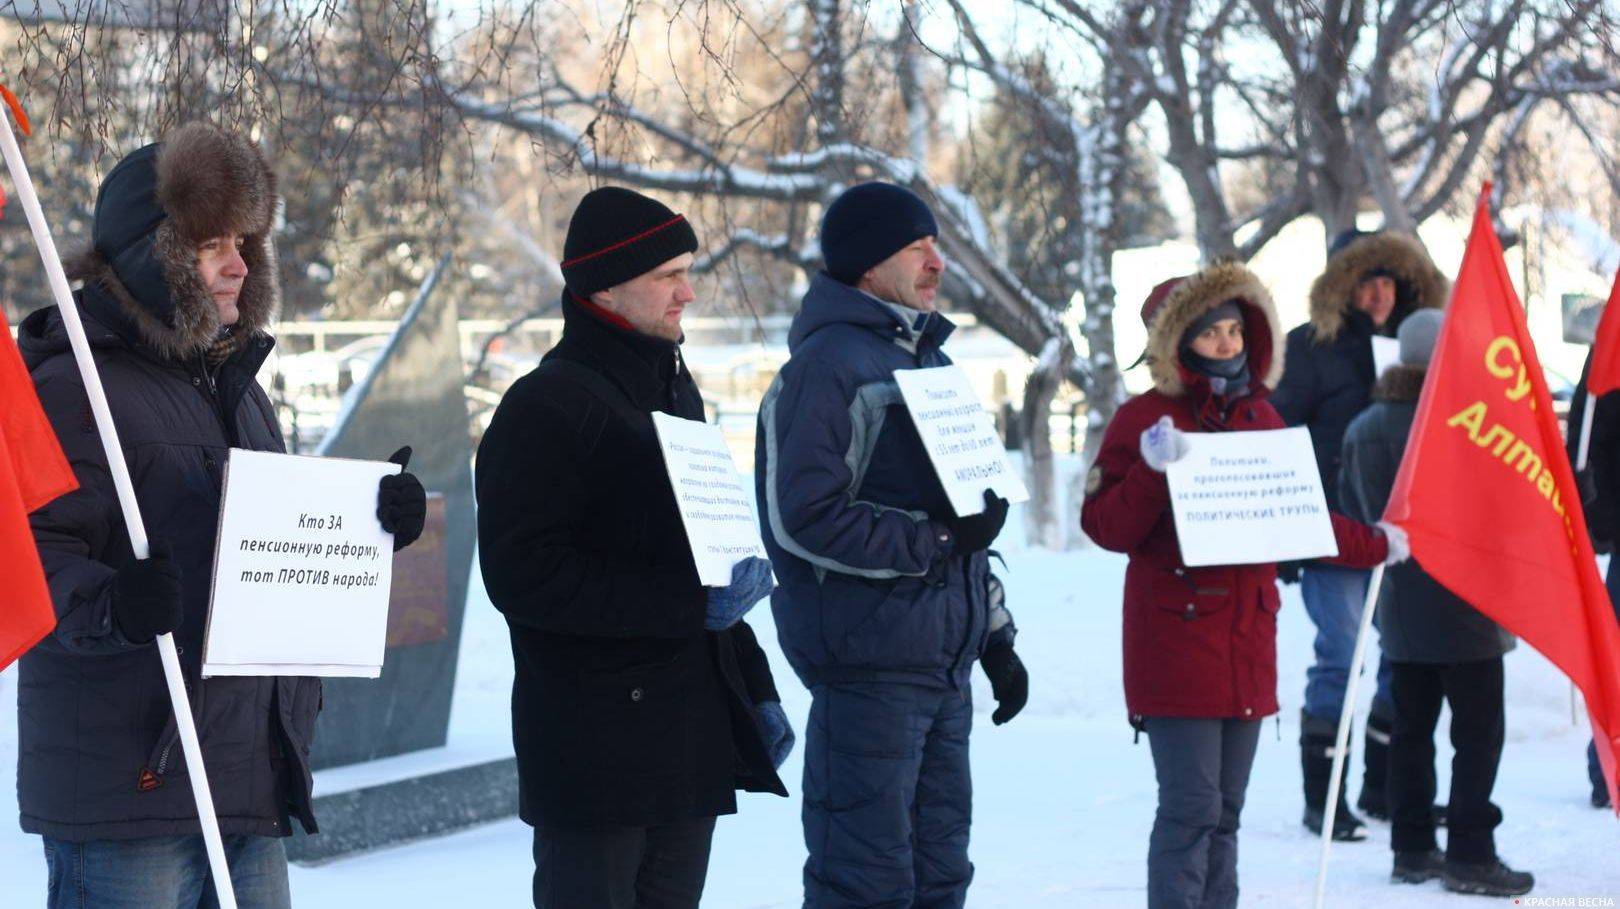 Пикет против пенсионной реформы. Барнаул